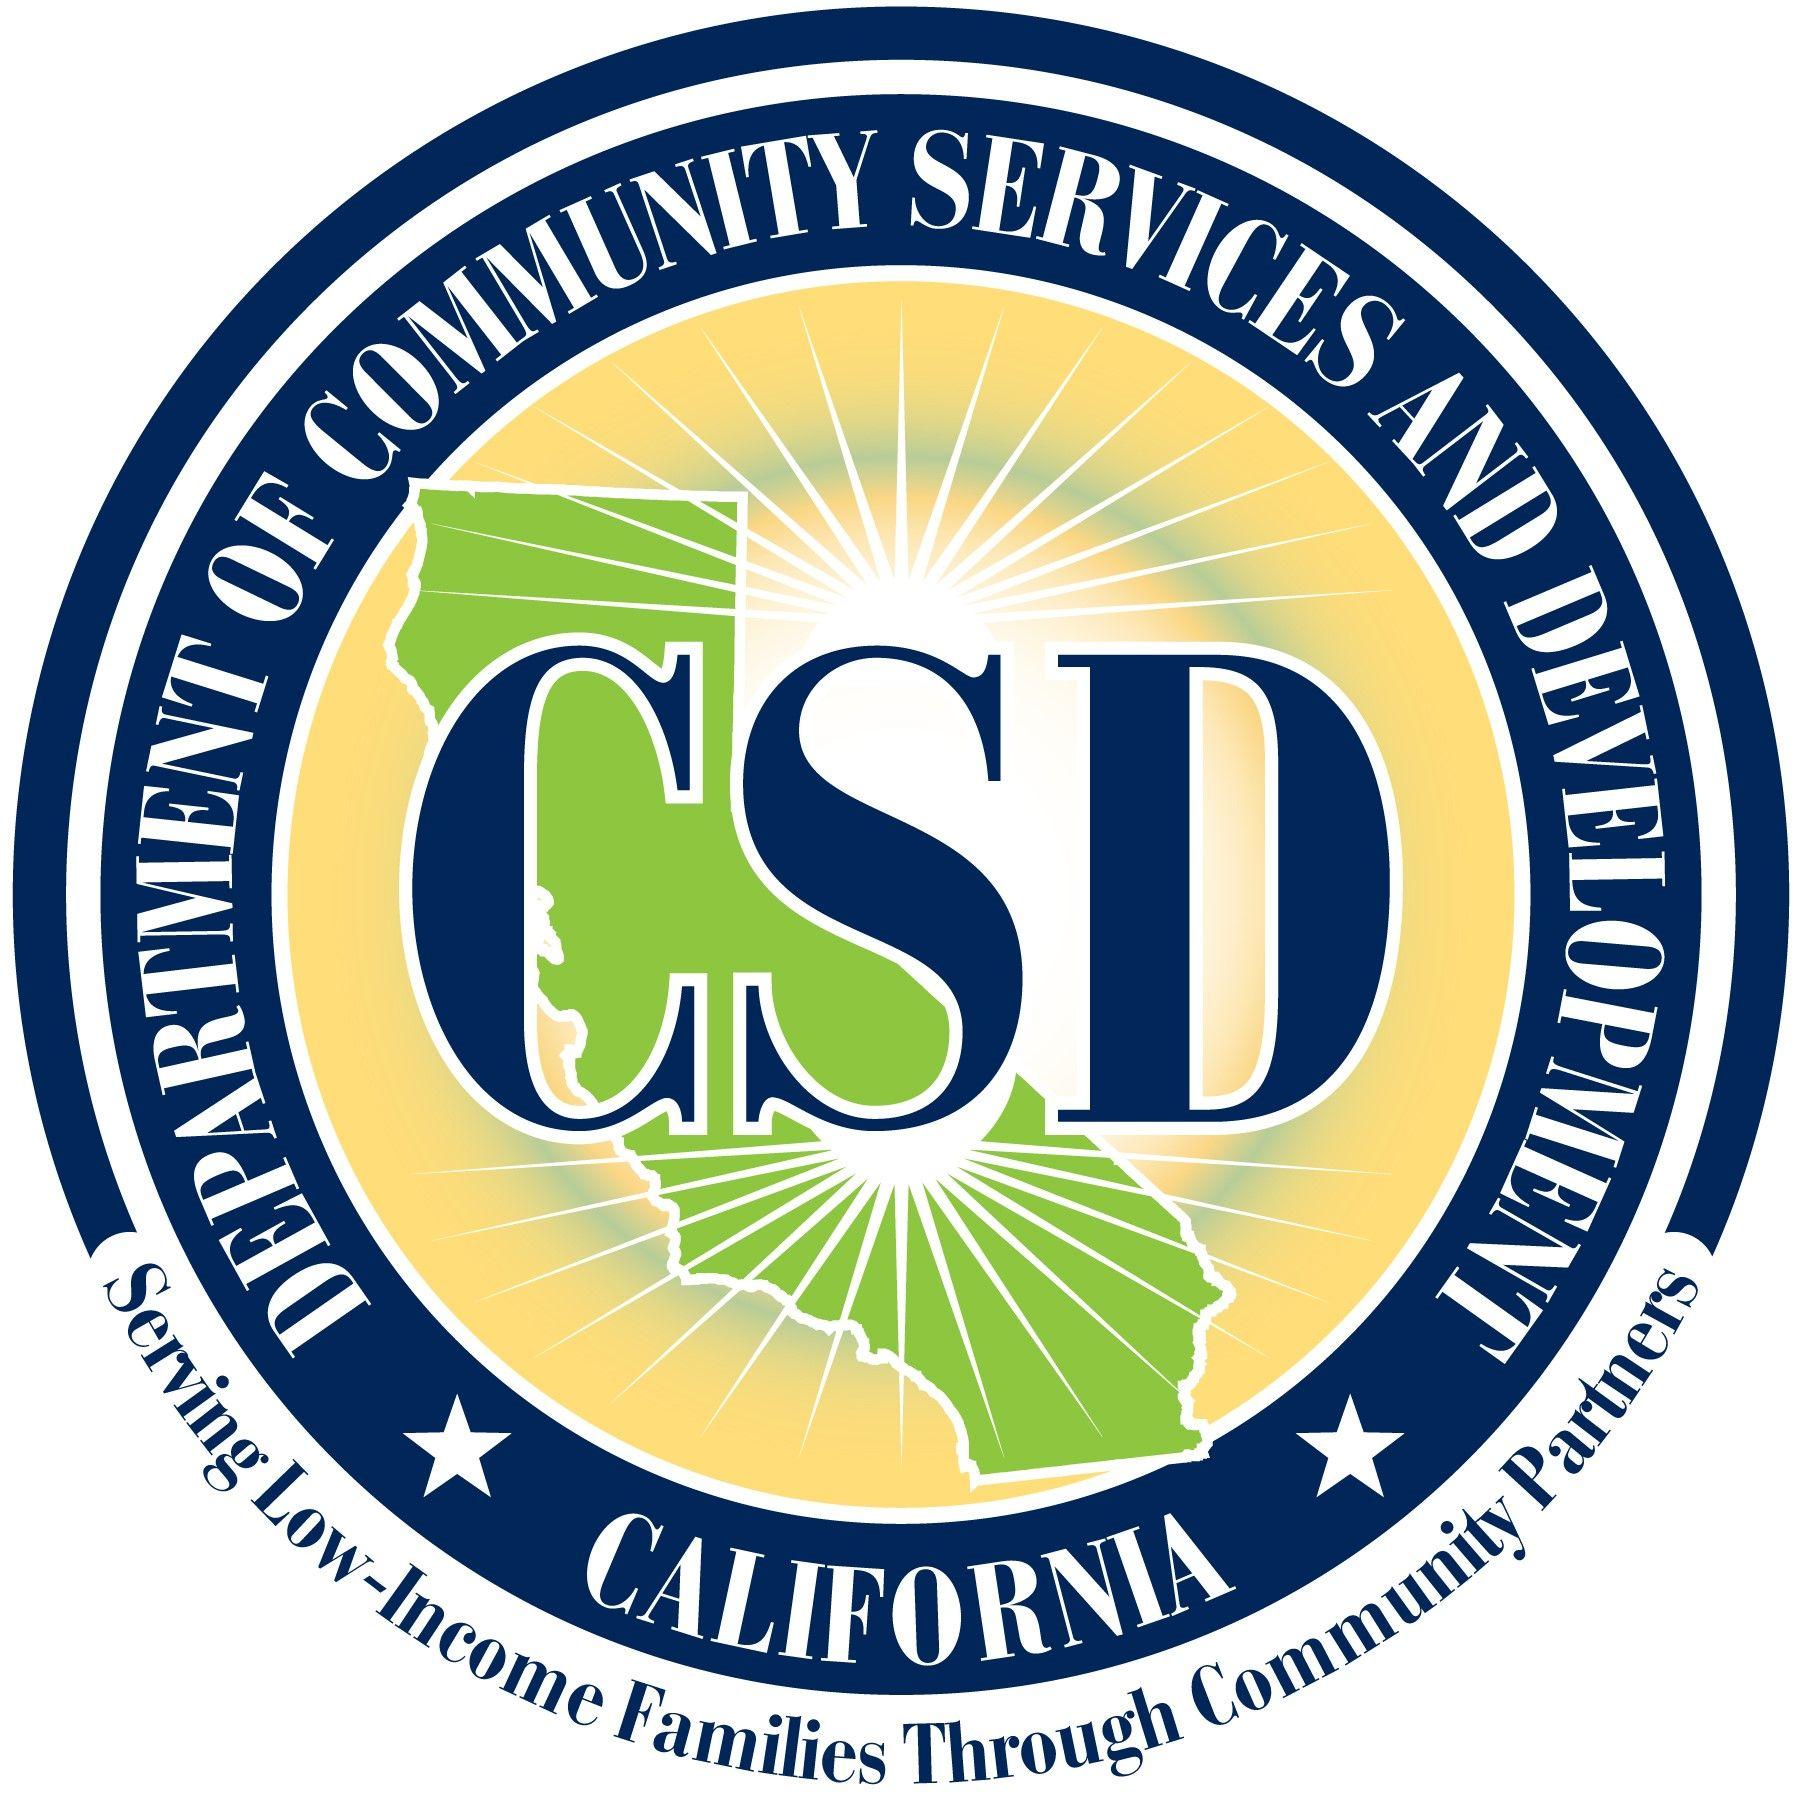 CSD Logo - CSD Logo.hi.res Cooperativa de California